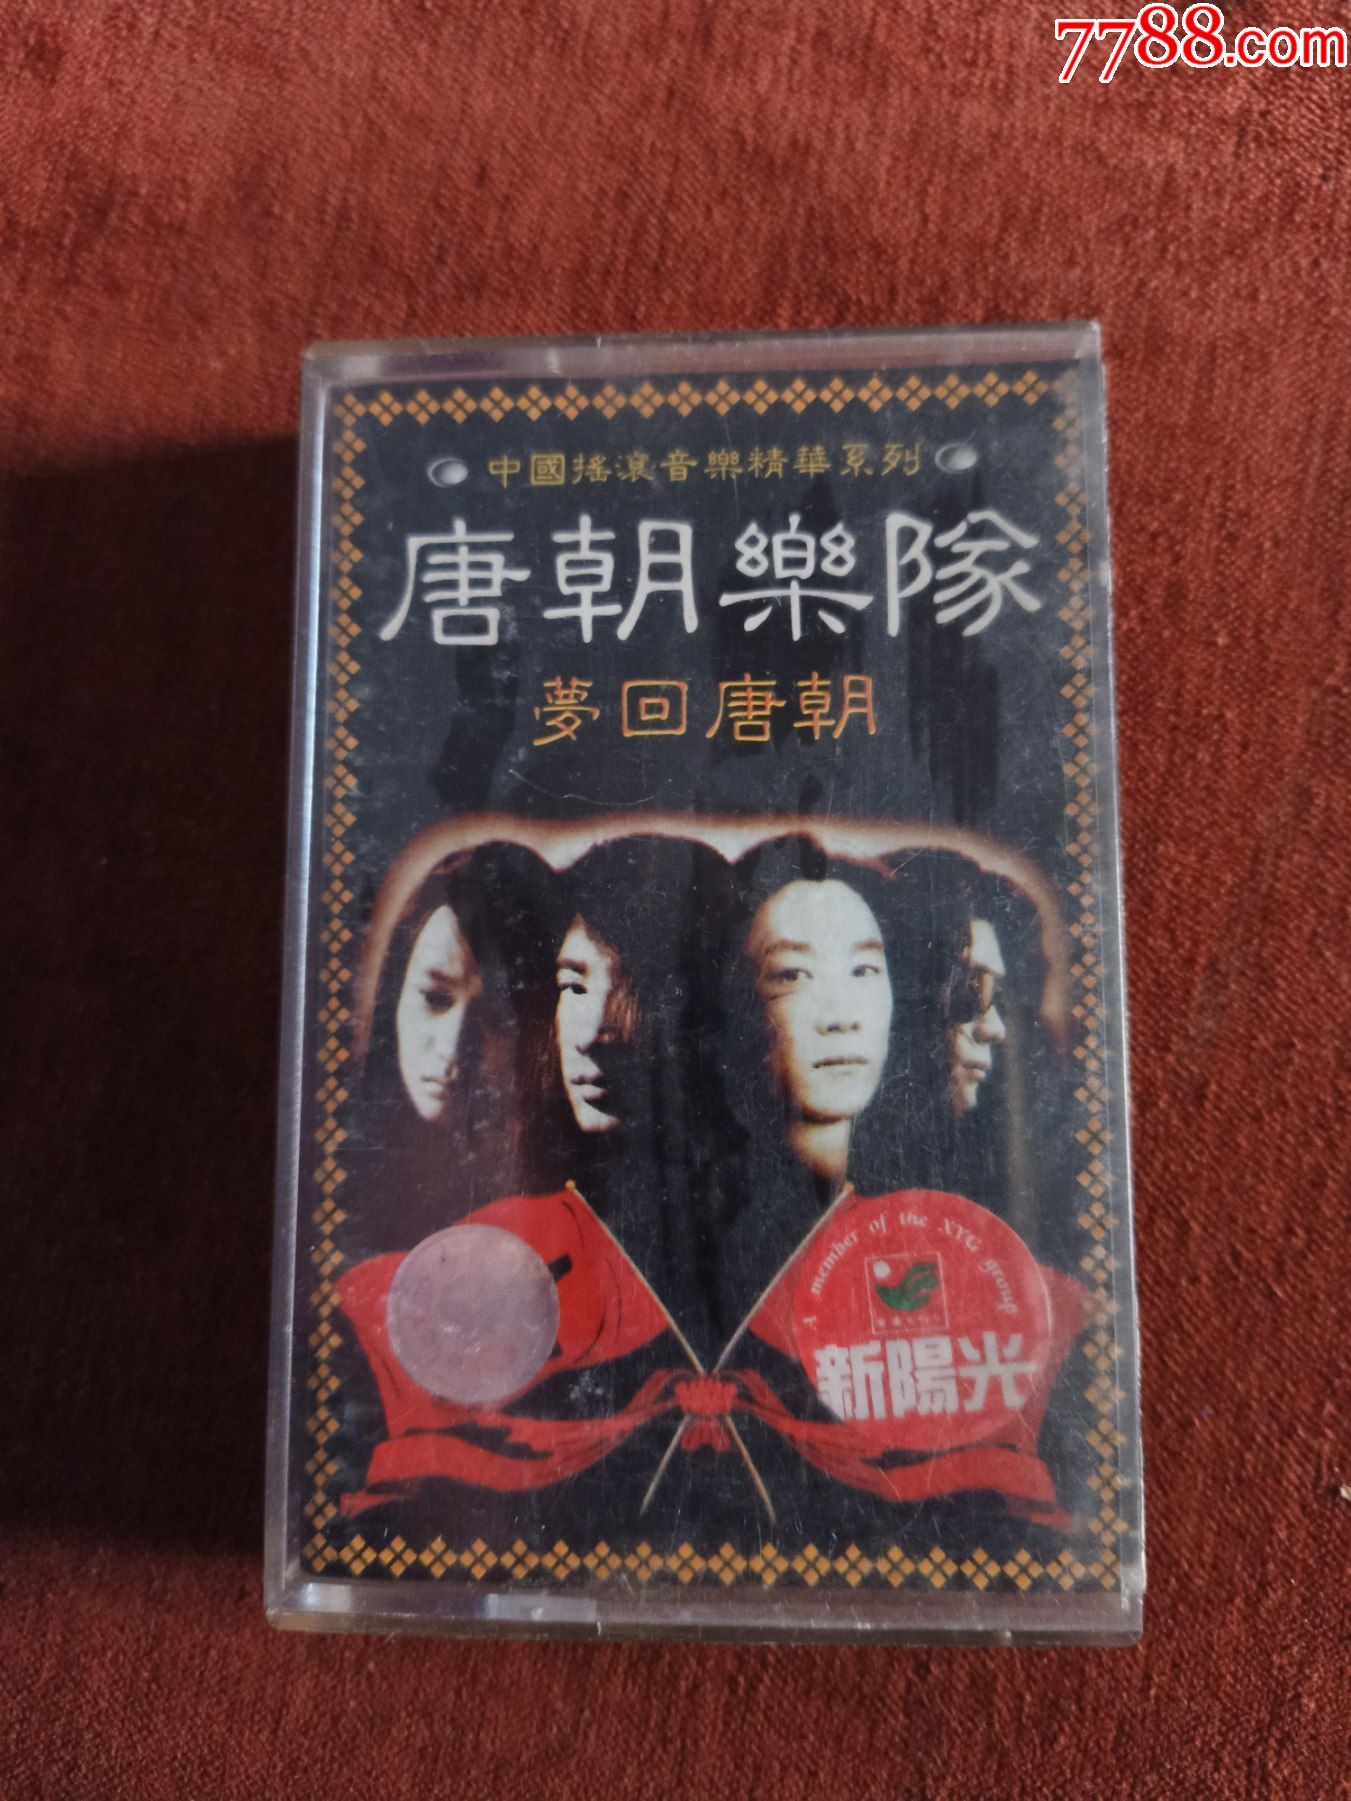 唐朝乐队梦回唐朝磁带新阳光发行广西音像出版